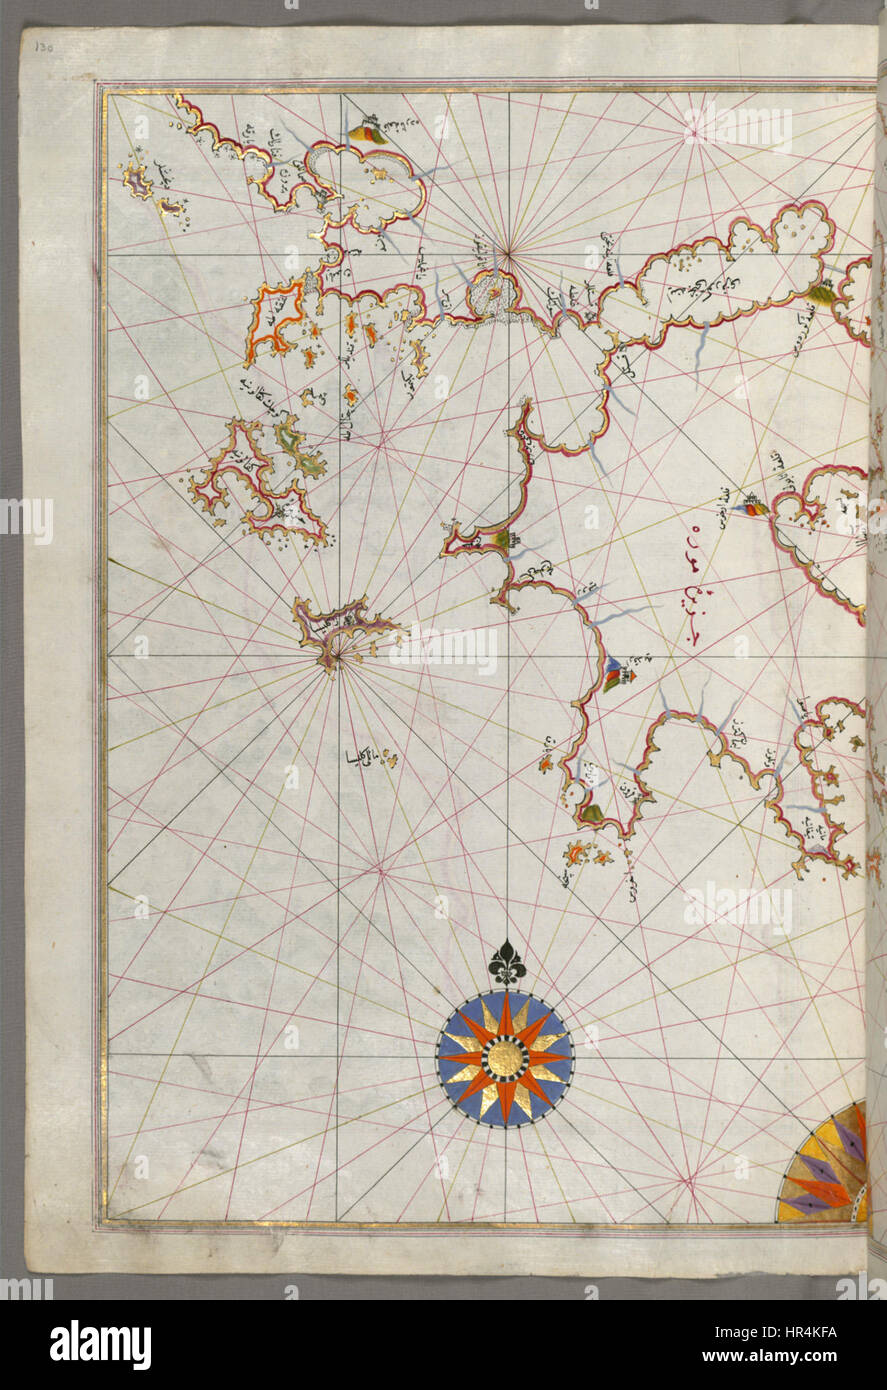 Piri Reis - Karte der Inseln Kefalonia, Zakynthos und Lefkada im Ionischen Meer - Walters W658130A - ganze Seite Stockfoto